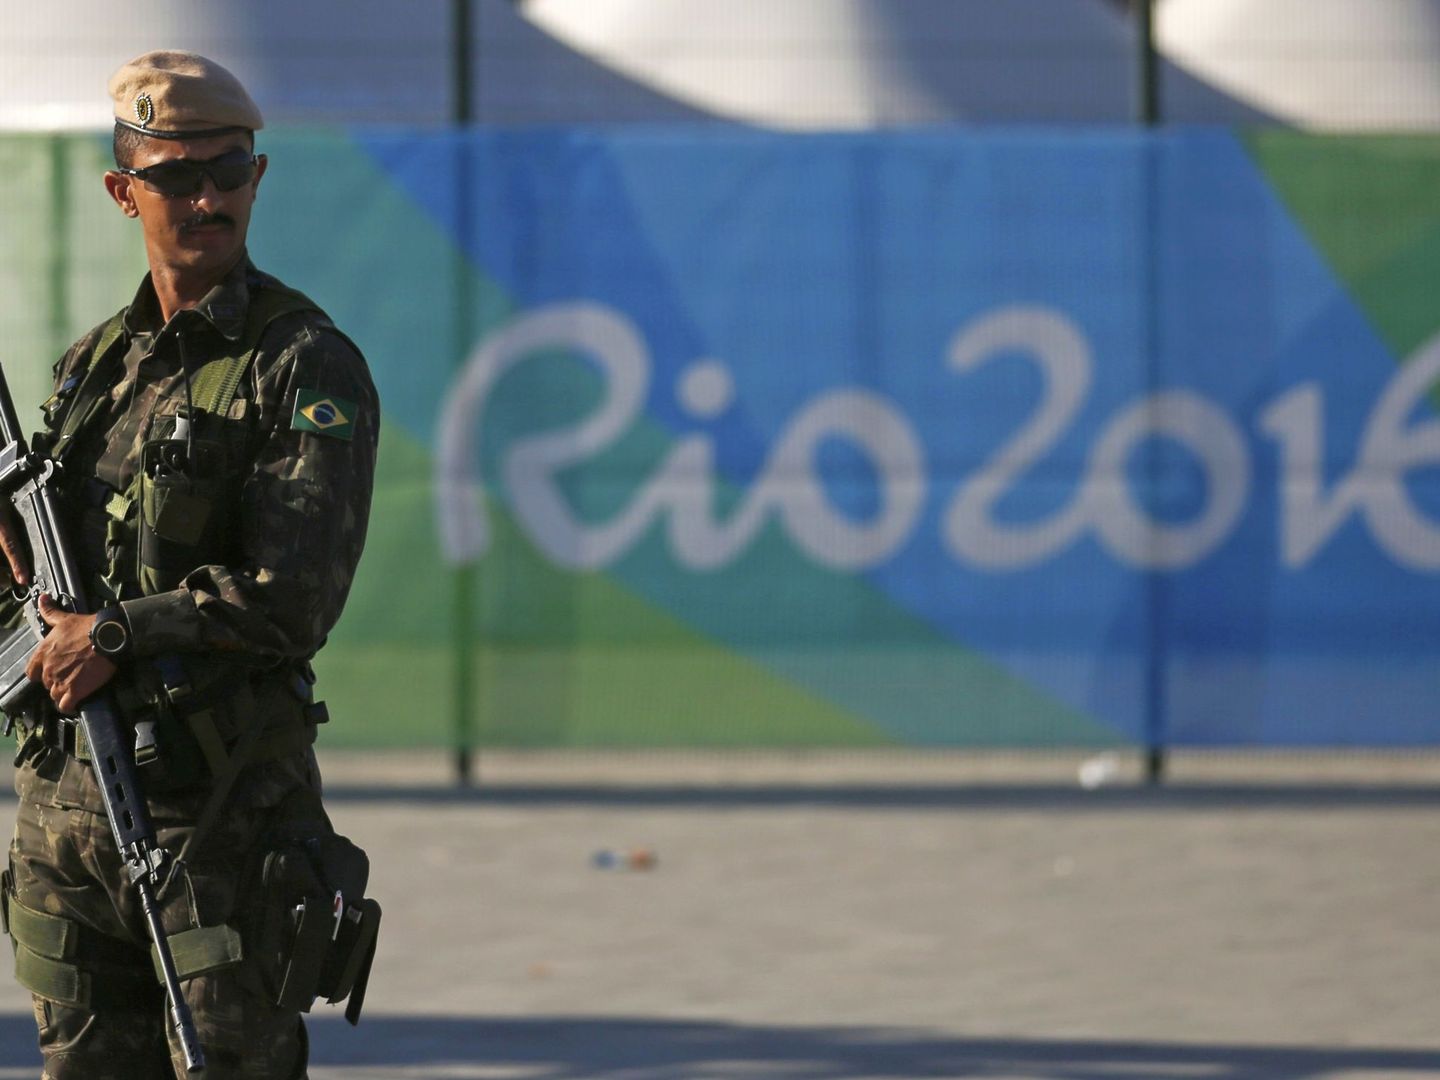 Un miembro de las fuerzas especiales de la policía monta guardia en el barrio de Barra da Tijuca, dos semanas antes de la inauguración de los Juegos Olímpicos de Río 2016. (Reuters)